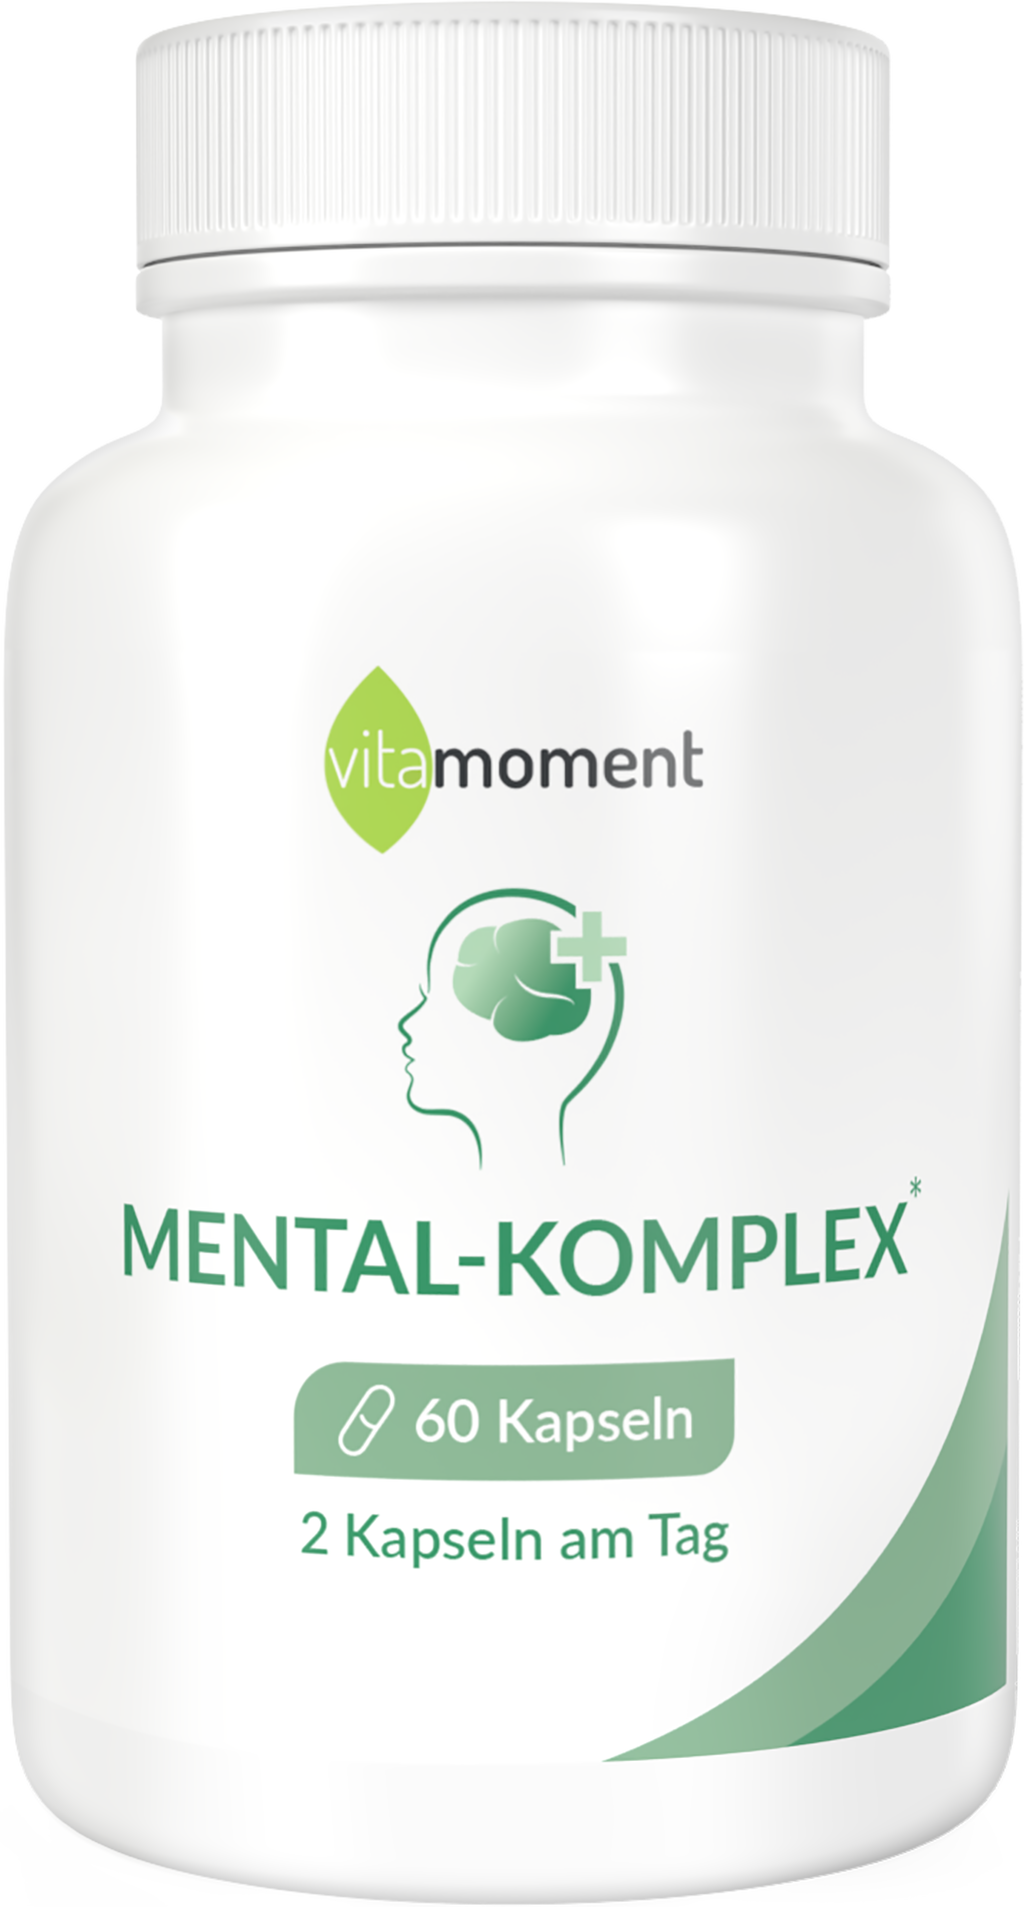 Mental-Komplex - 1 Dose - VitaMoment Produkt